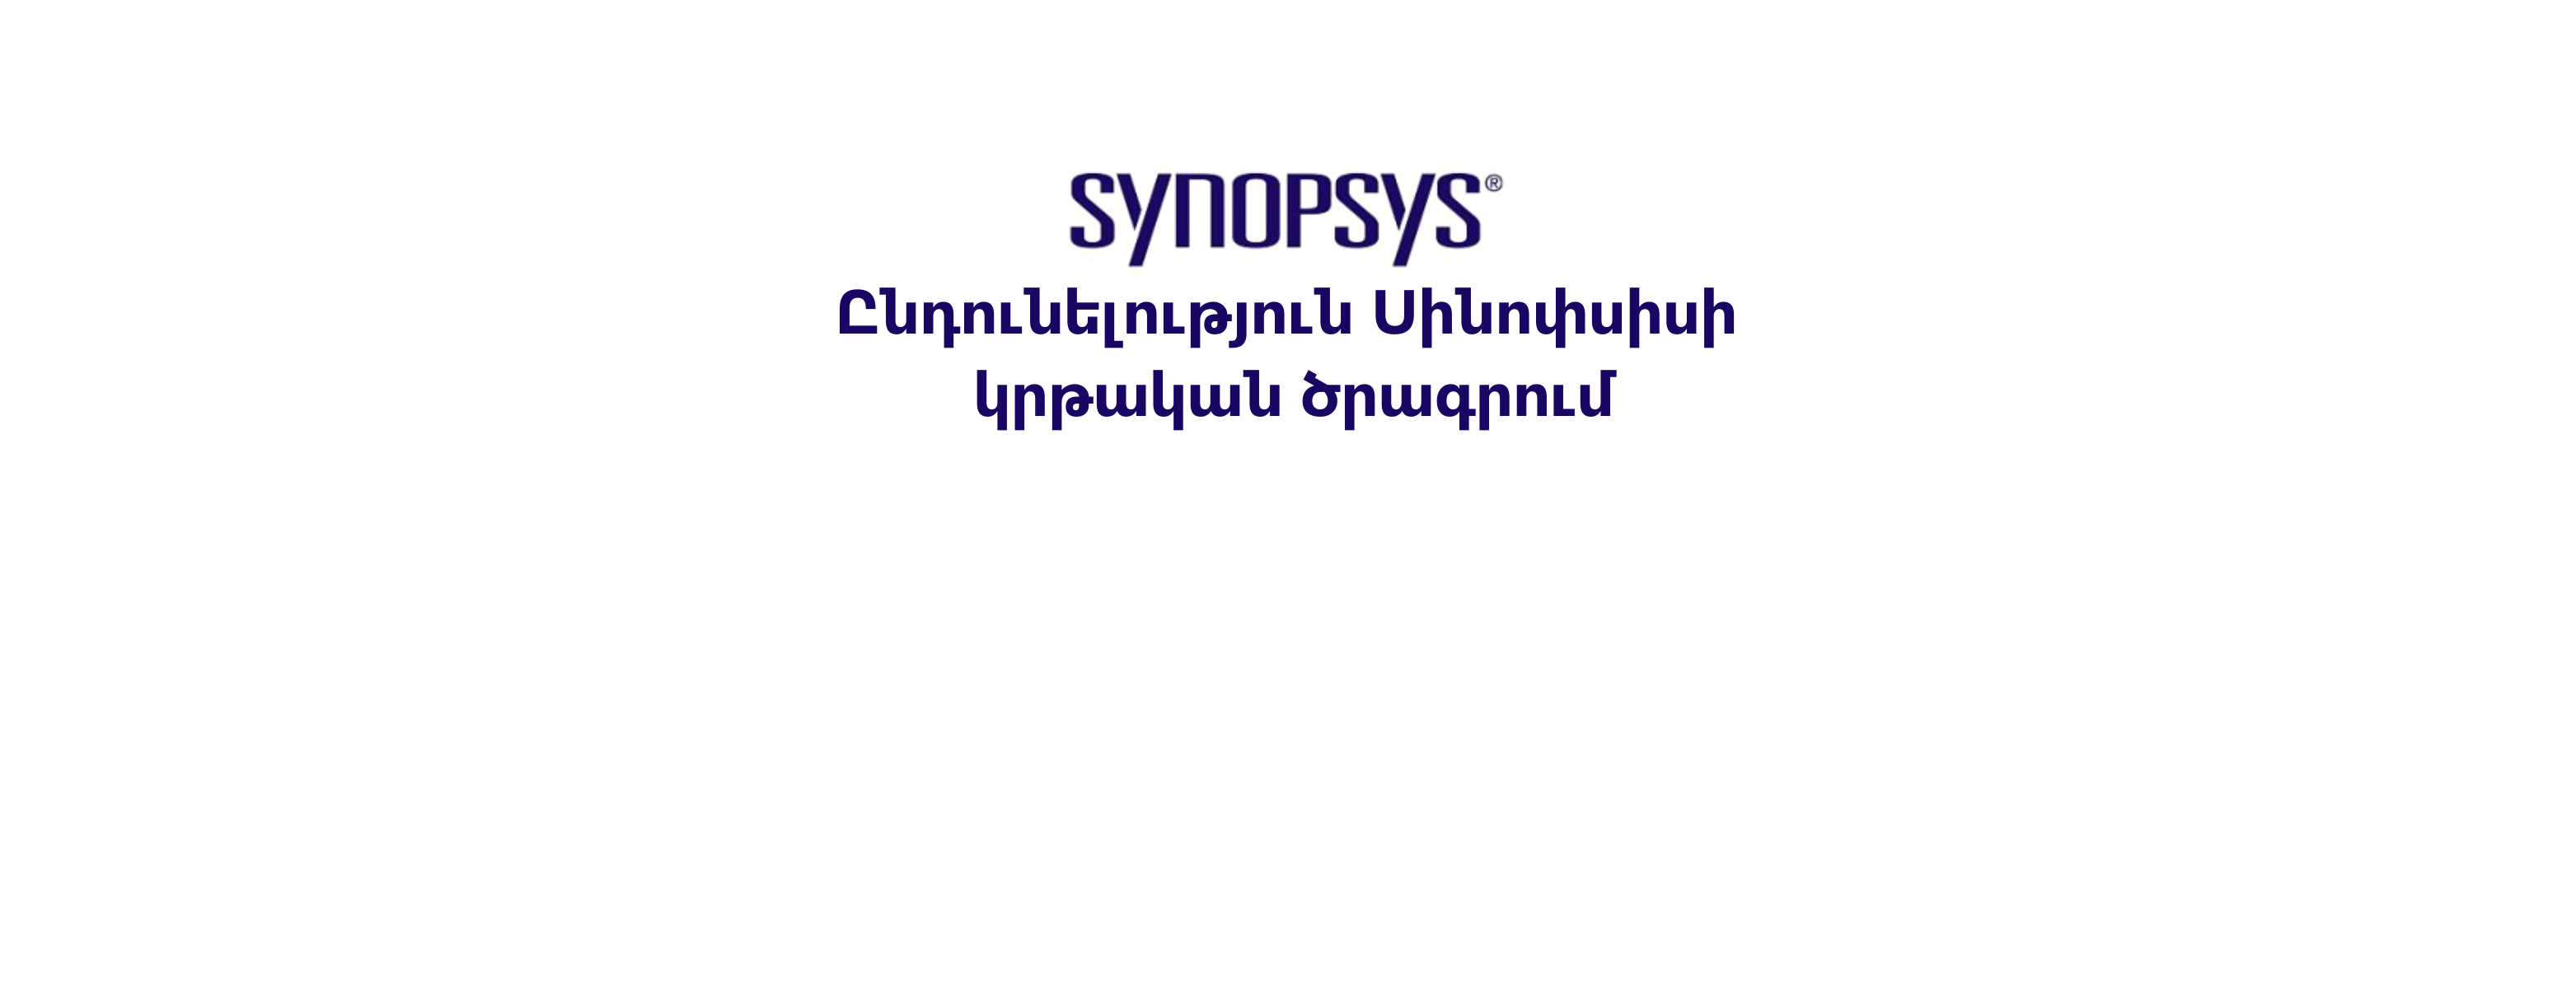 Ընդունելություն Սինոփսիսի կրթական ծրագրում